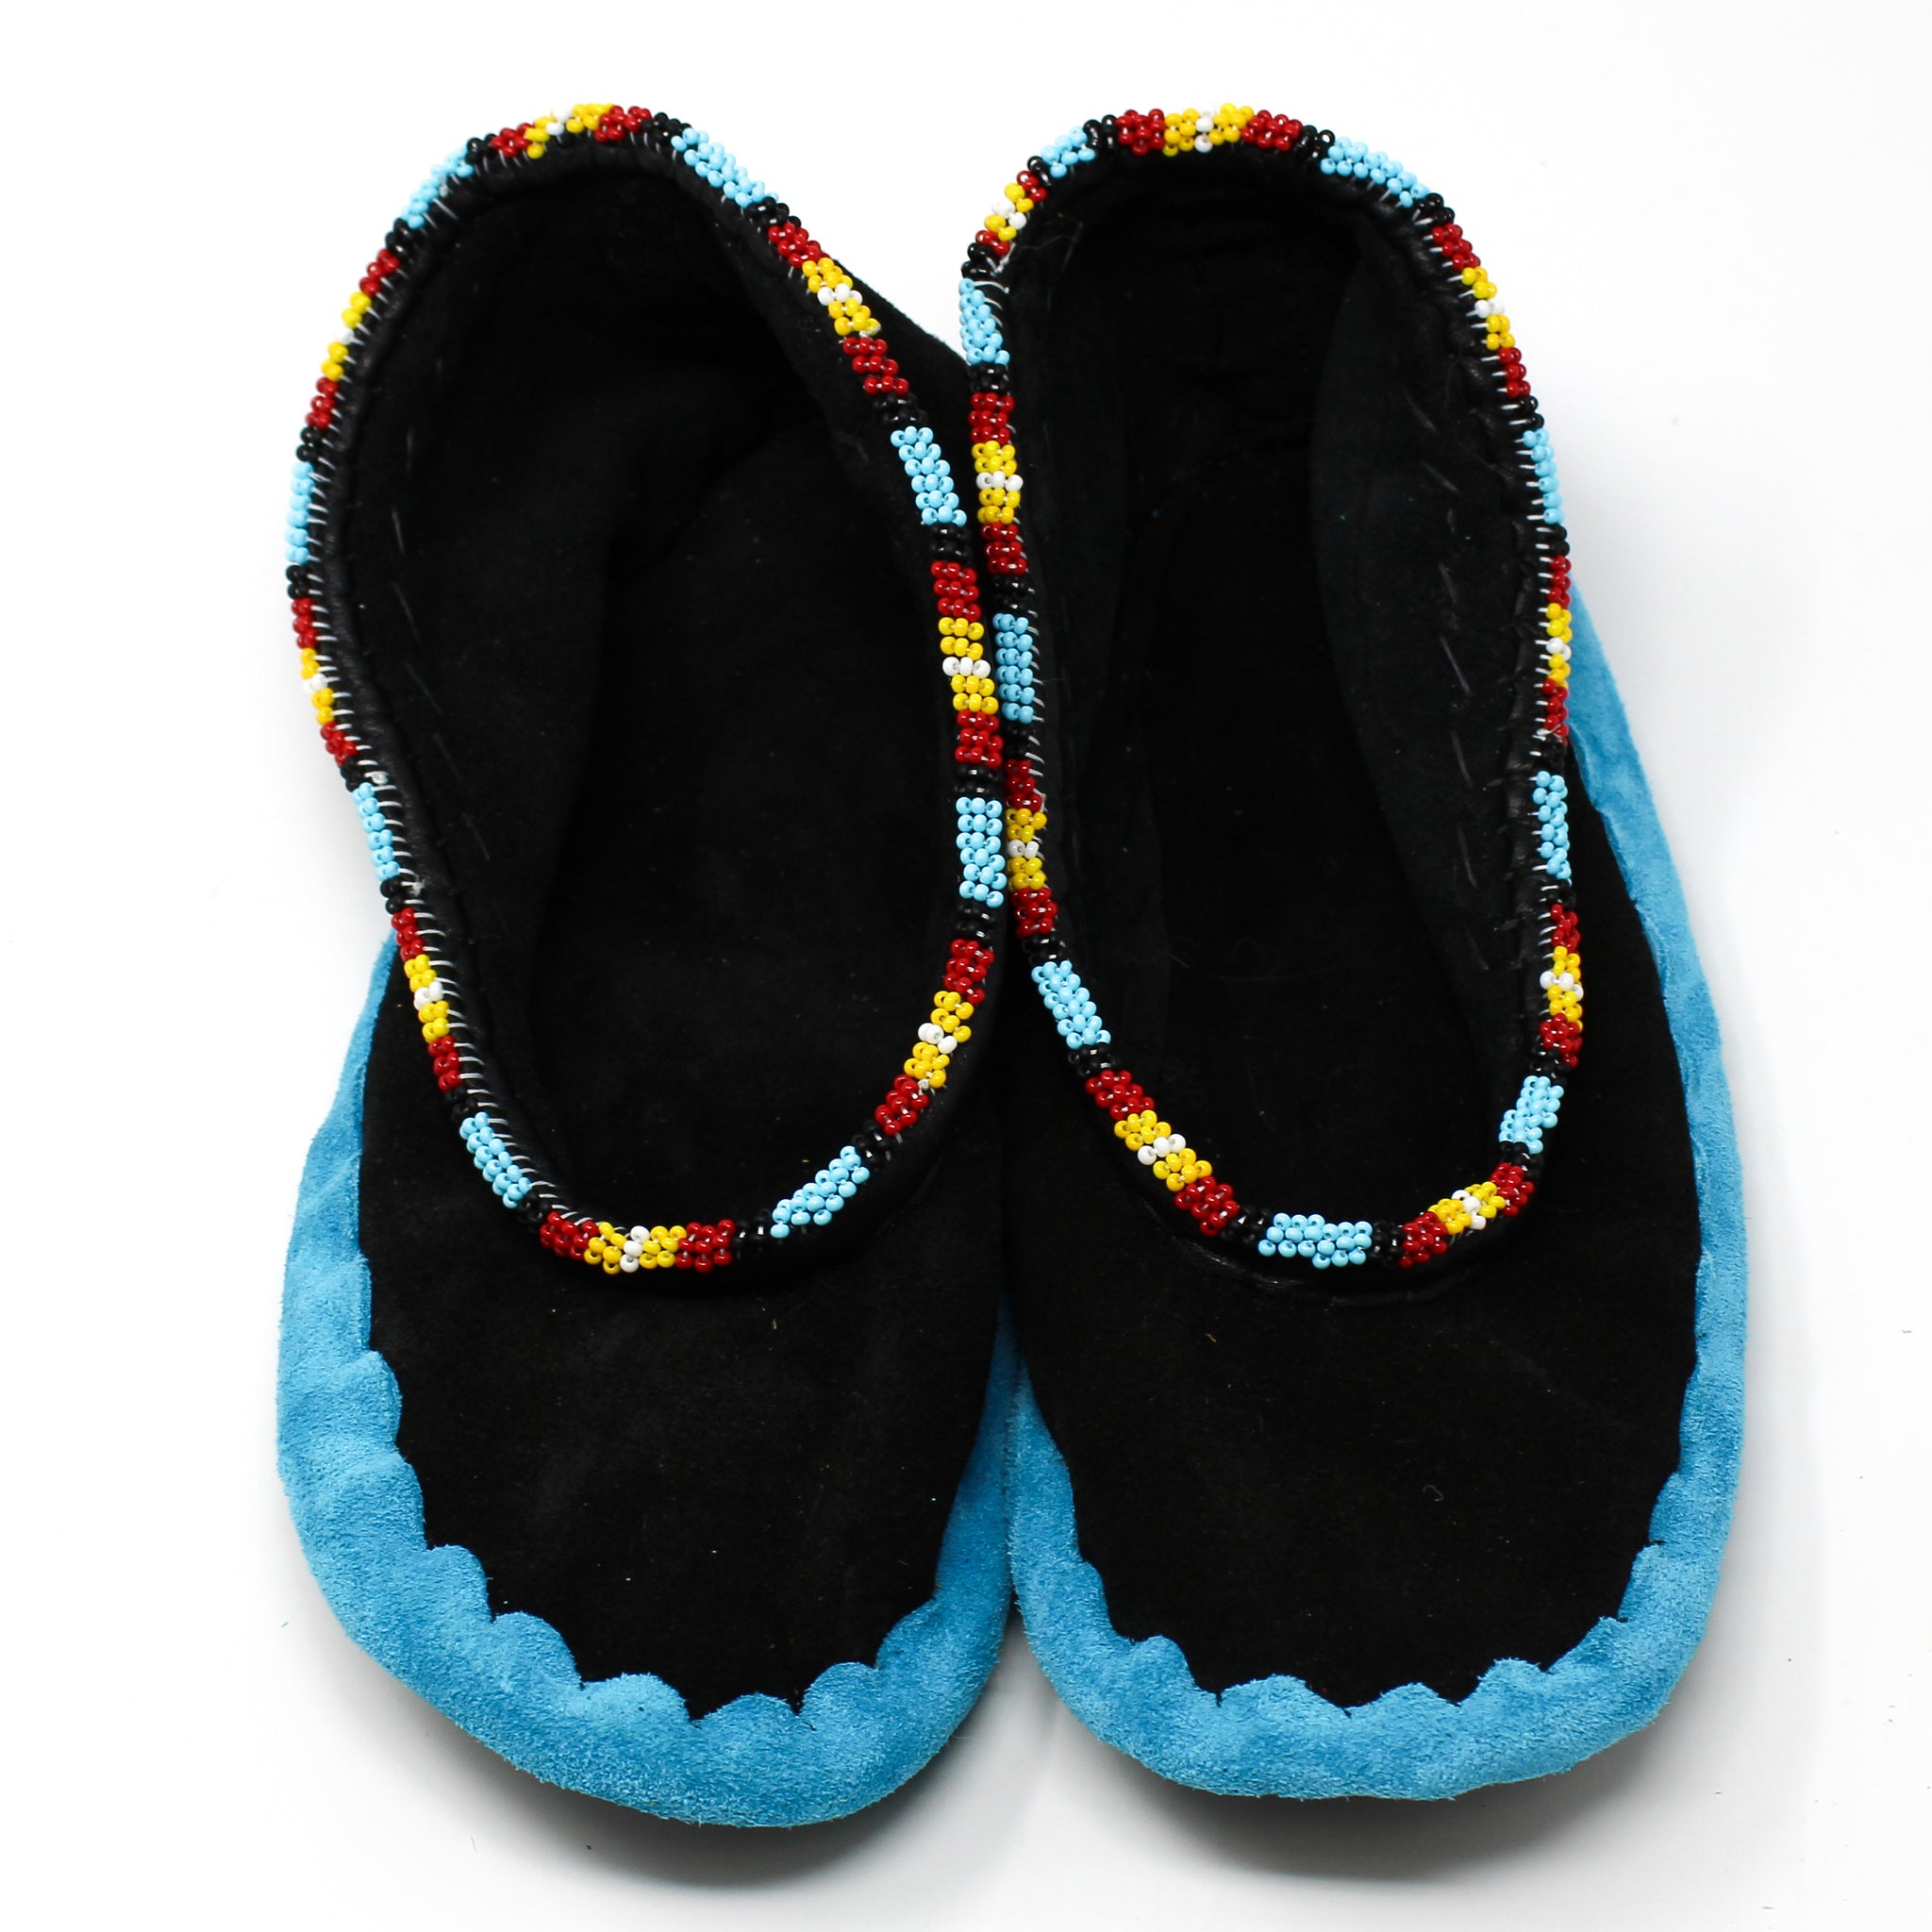 Powwow Slippers